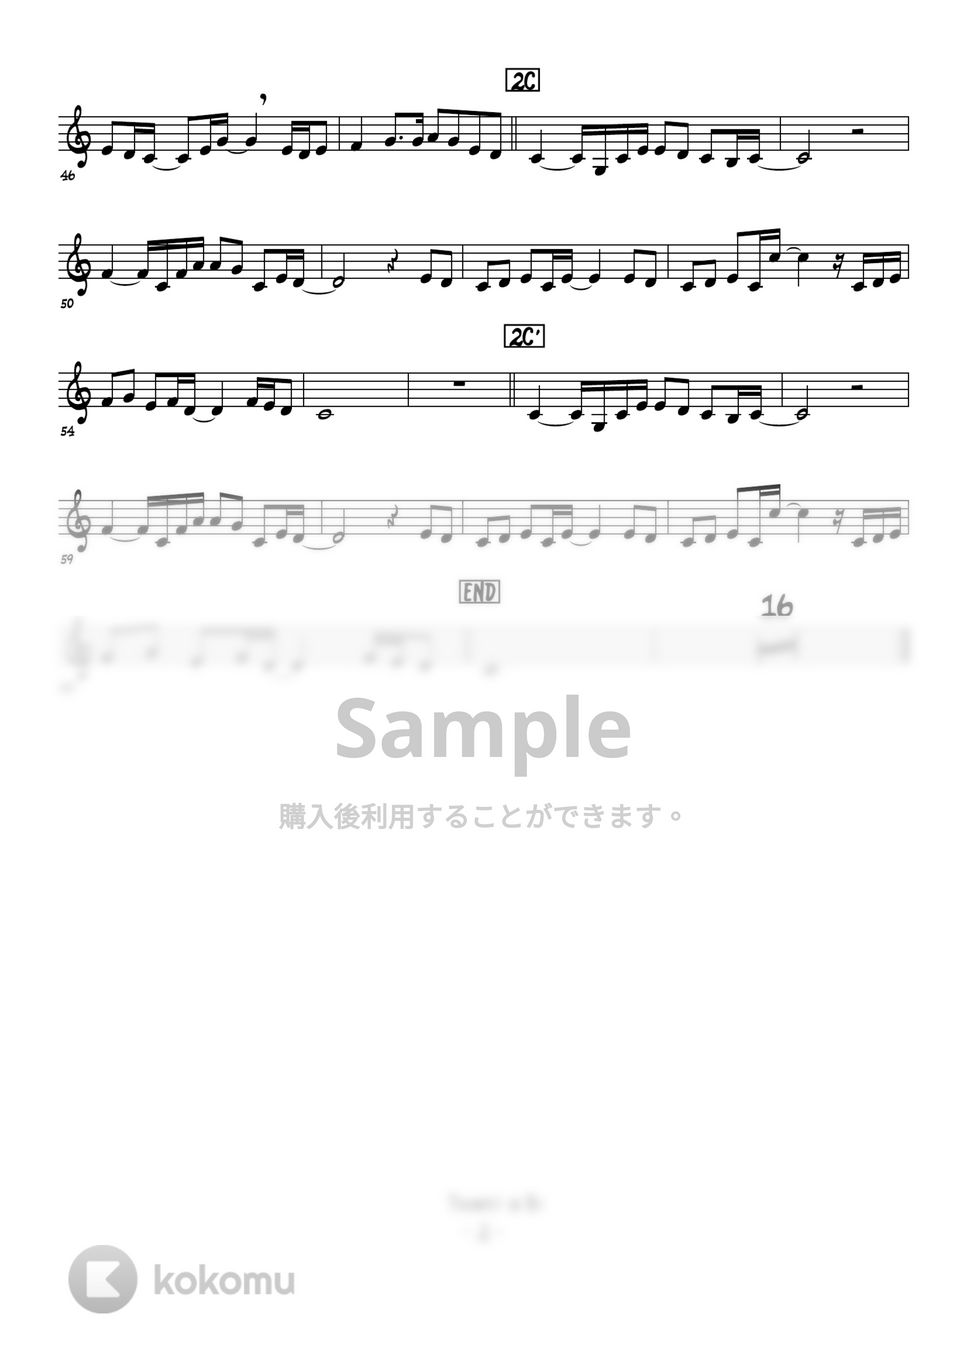 中島みゆき - 糸 (トランペットメロディー譜面) by 高田将利